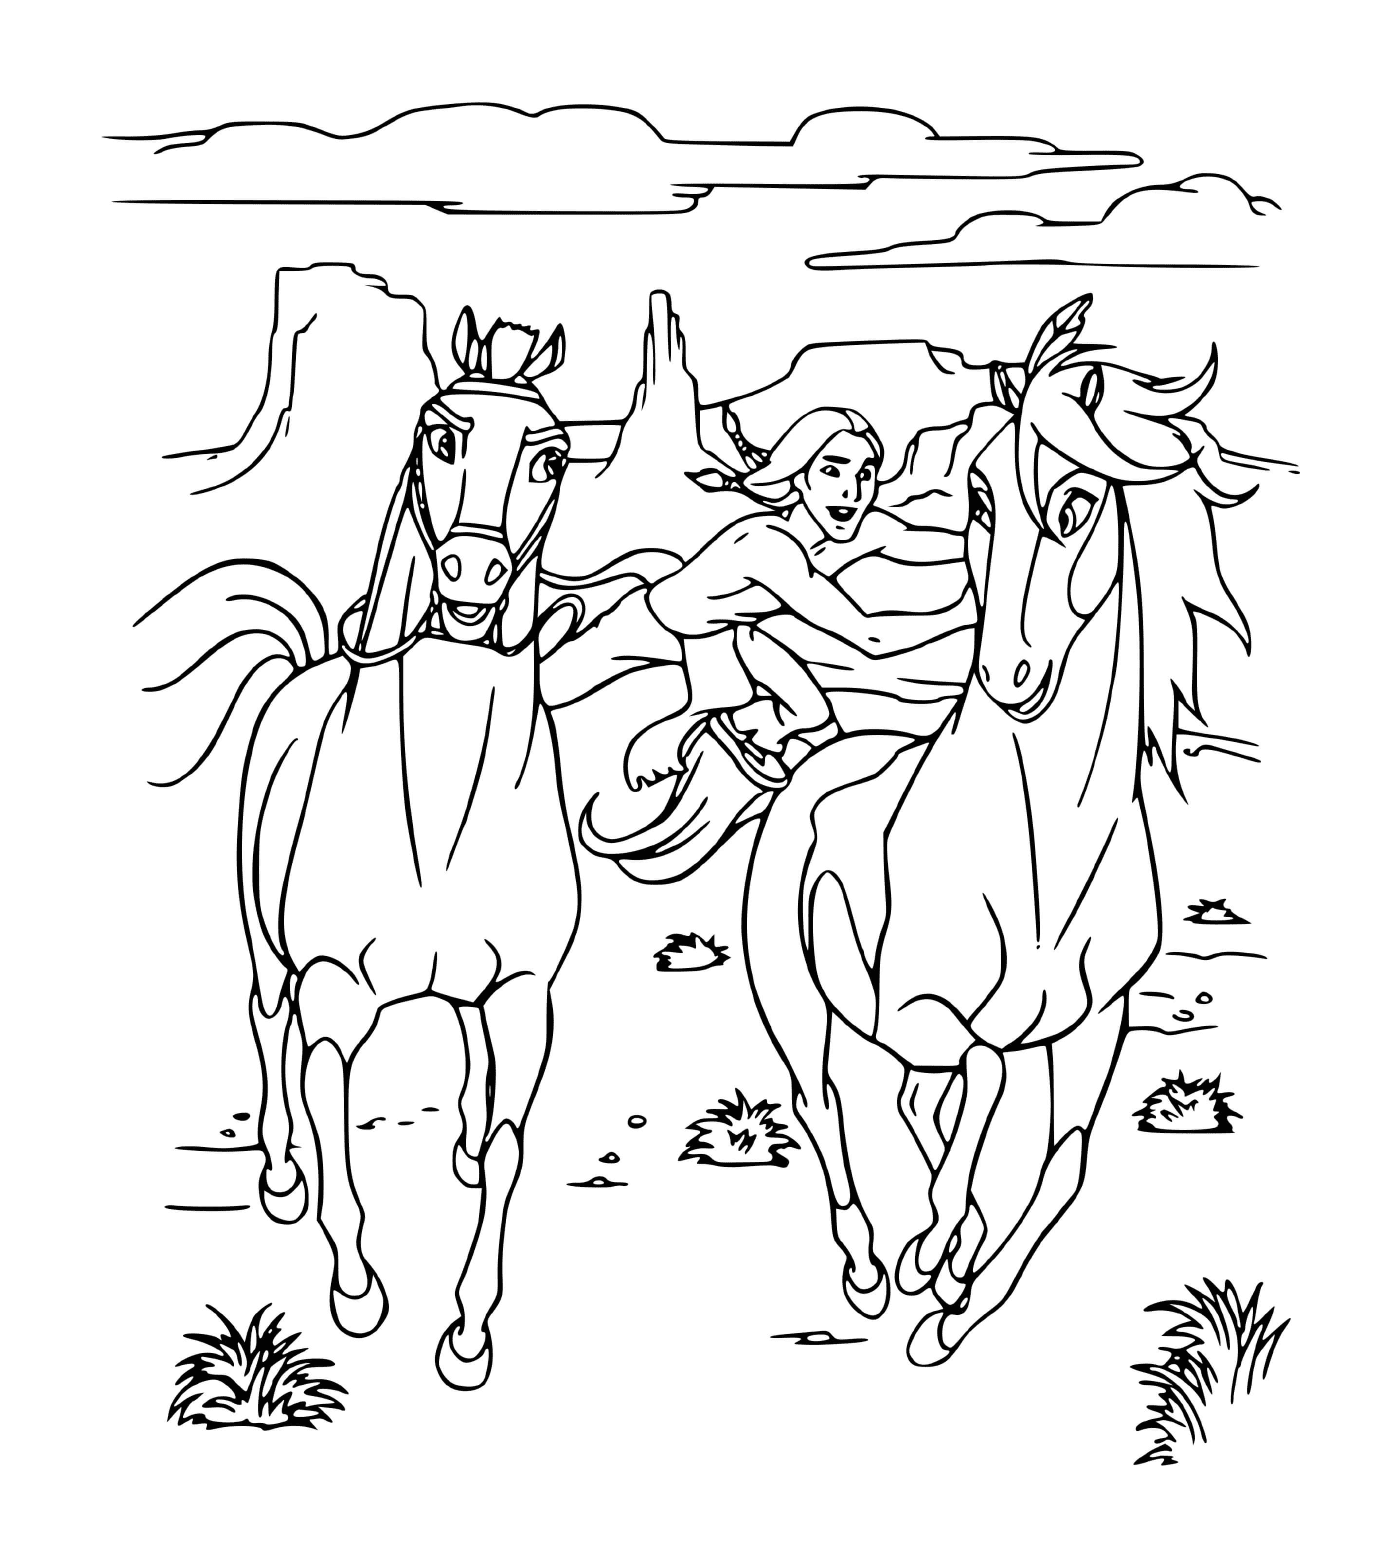  Espírito corre com outro cavalo 